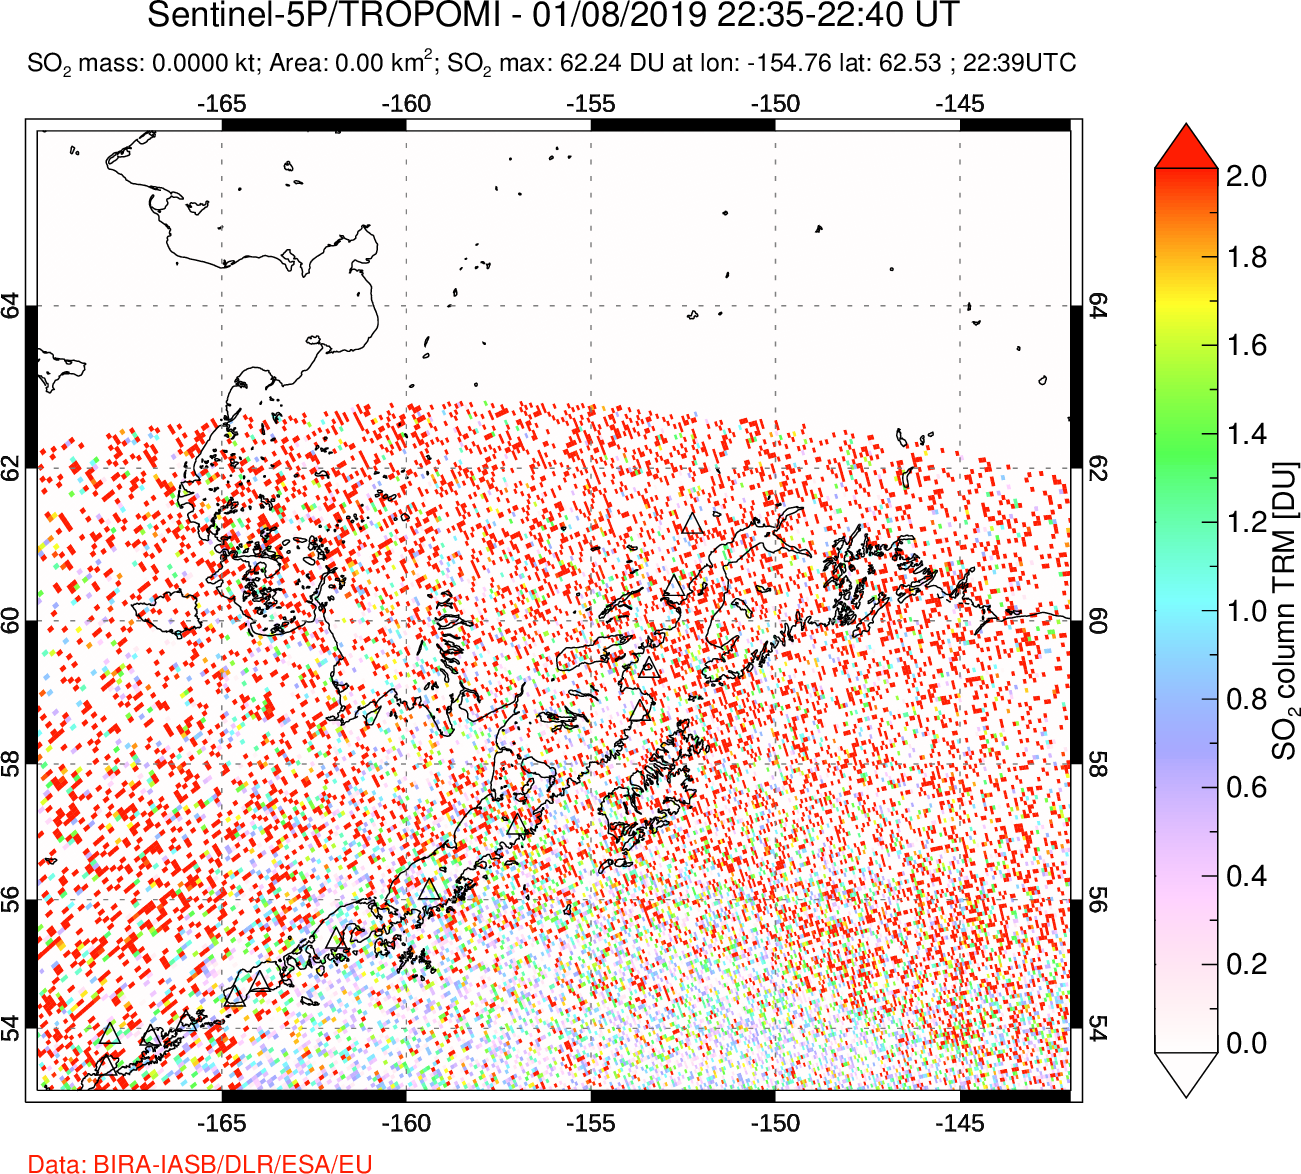 A sulfur dioxide image over Alaska, USA on Jan 08, 2019.